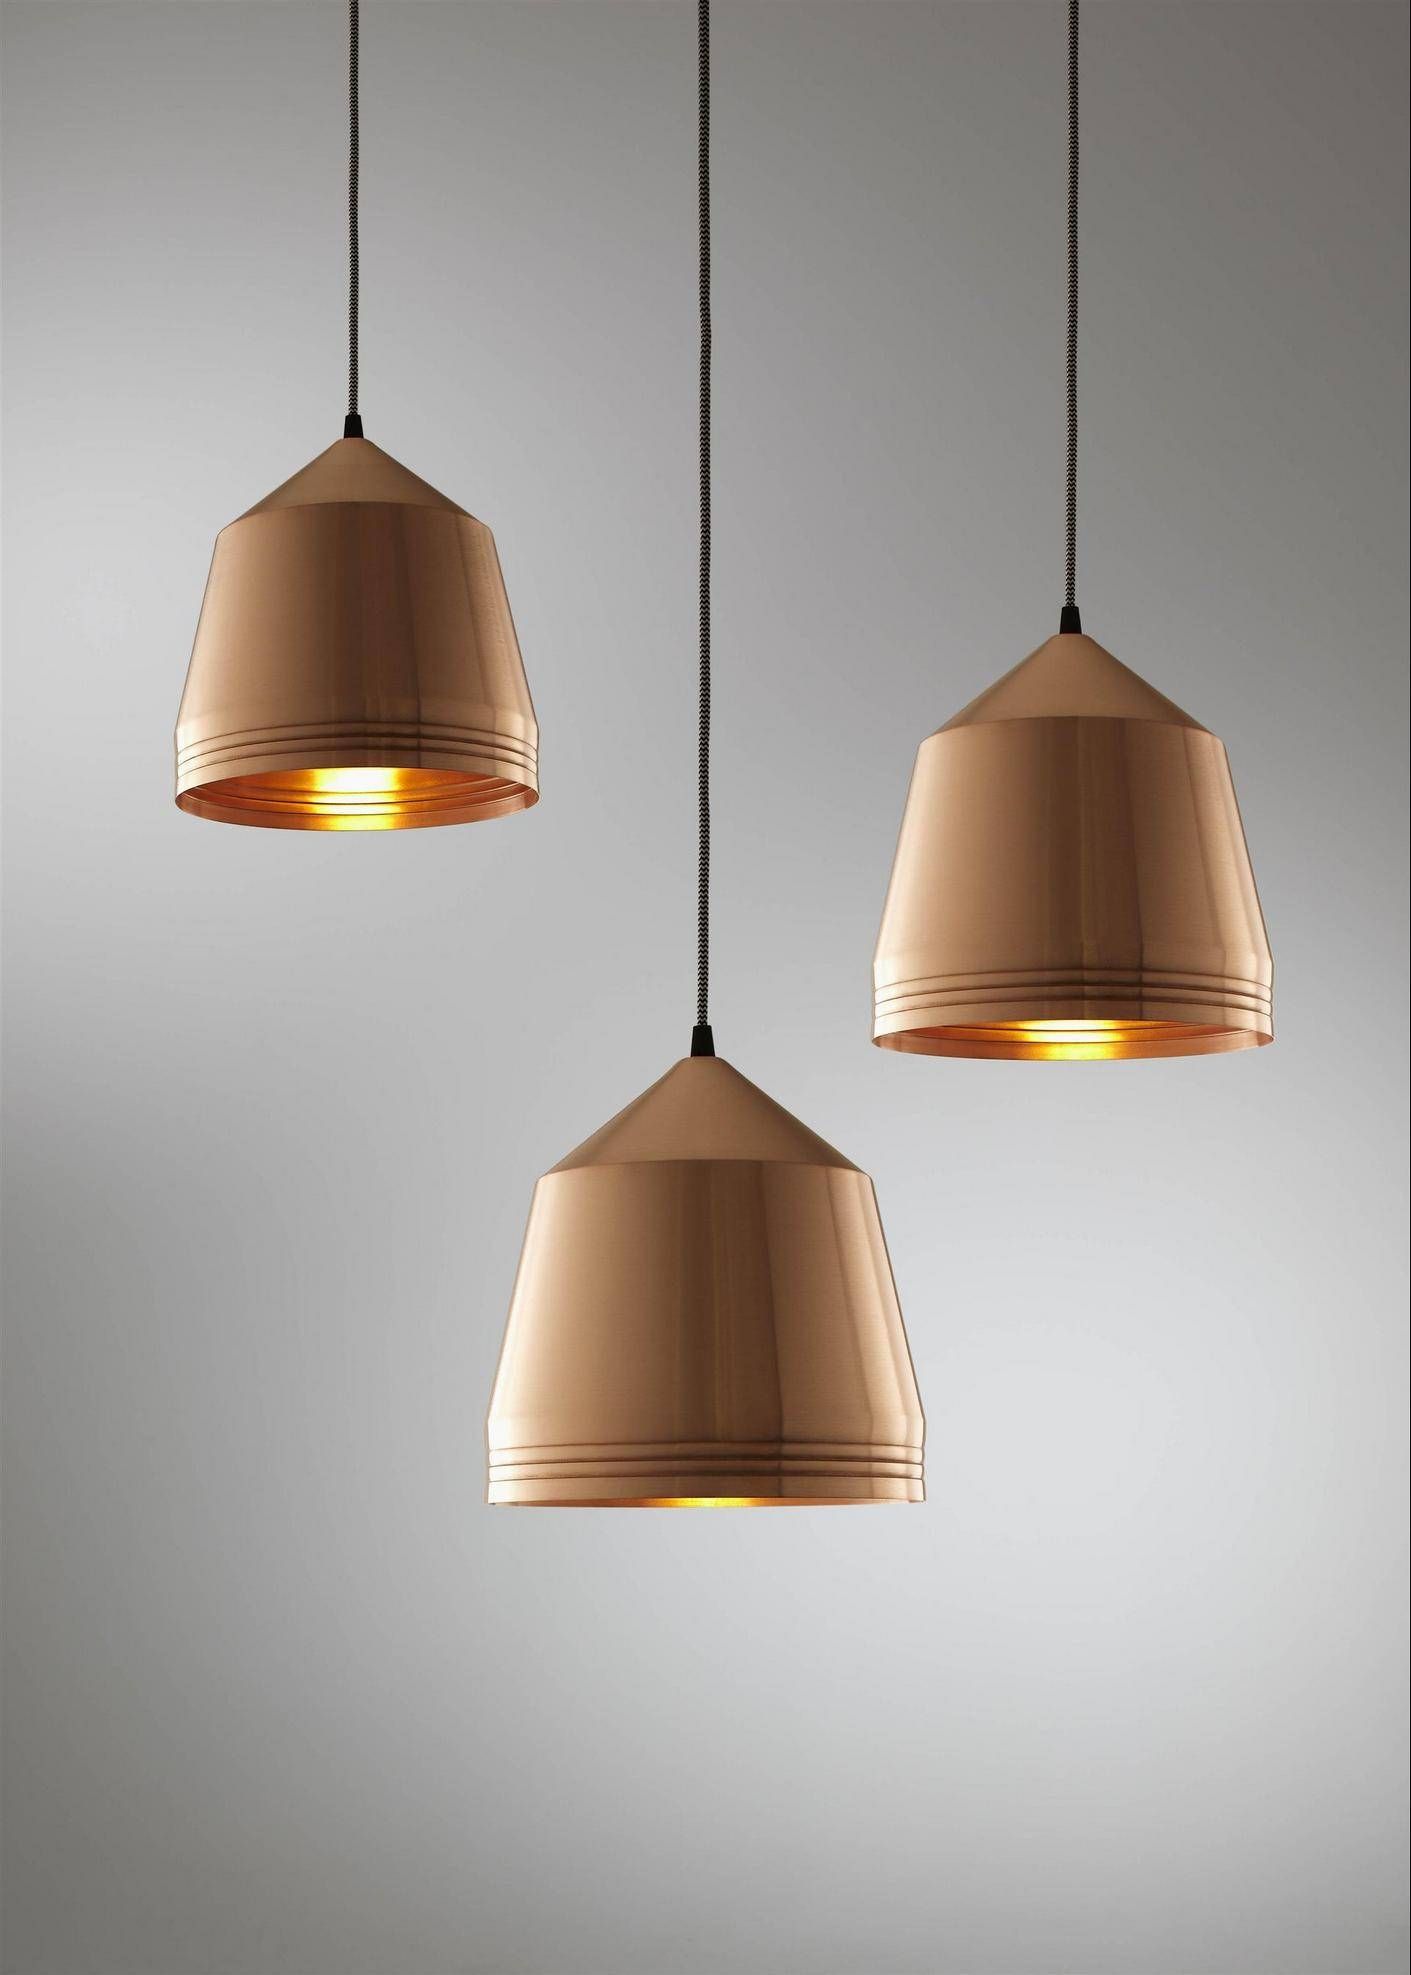 Living Room: – Copper Pendant Light | Copper Pendant Lights For With Hammered Copper Pendant Lights (View 8 of 15)